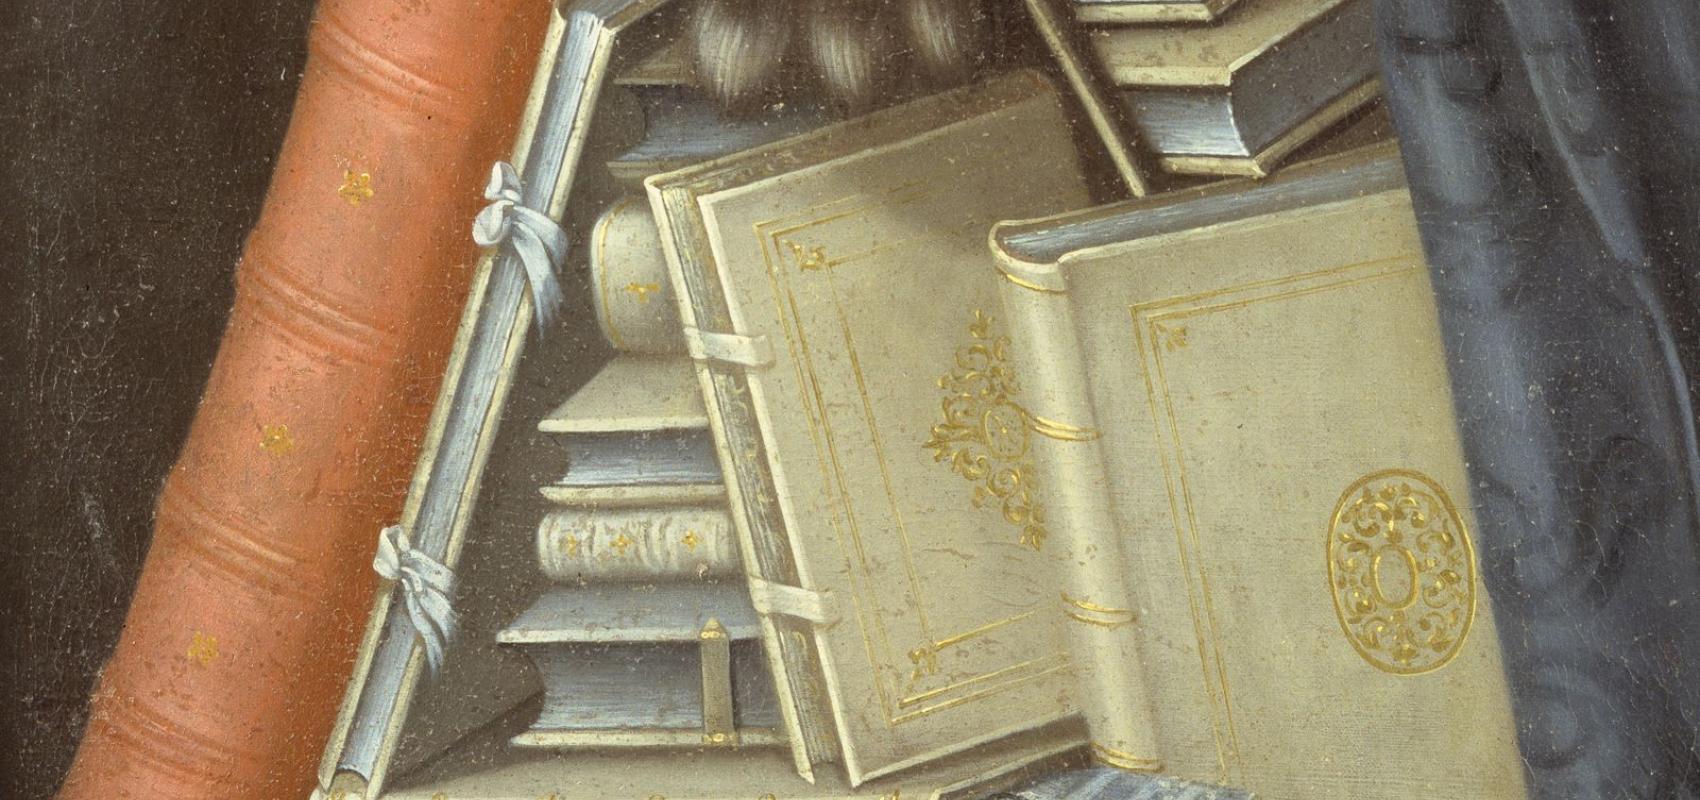 Le Bibliothécaire de Giuseppe Arcimboldo (détail) - 1562 - Château de Skokloster, Suède